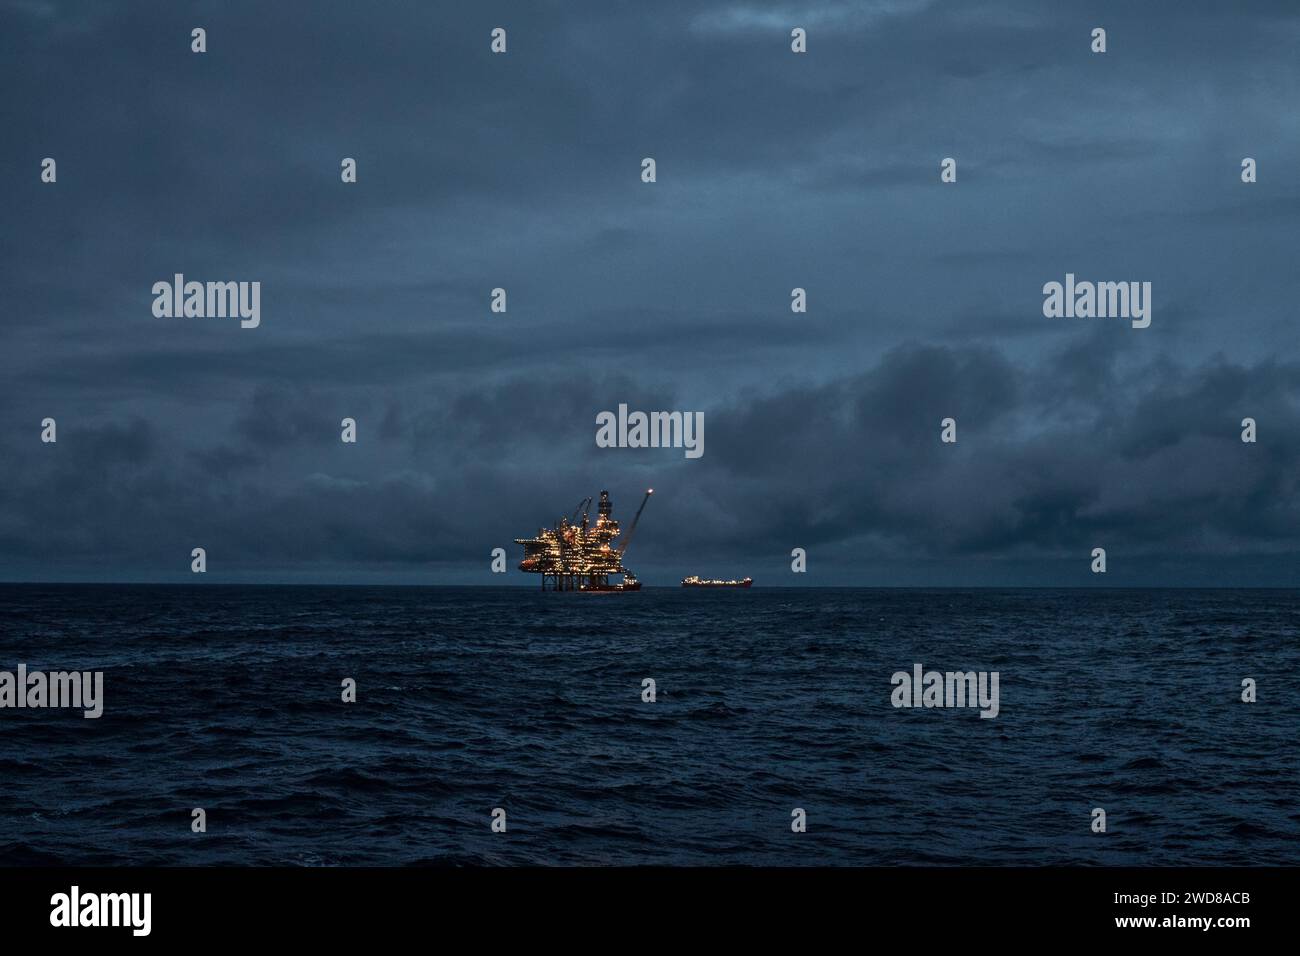 Vue panoramique de la plate-forme pétrolière et gazière, cric up plate-forme dans la mer au crépuscule avec ciel sombre et surface d'eau claire dans la mer du Nord. Banque D'Images